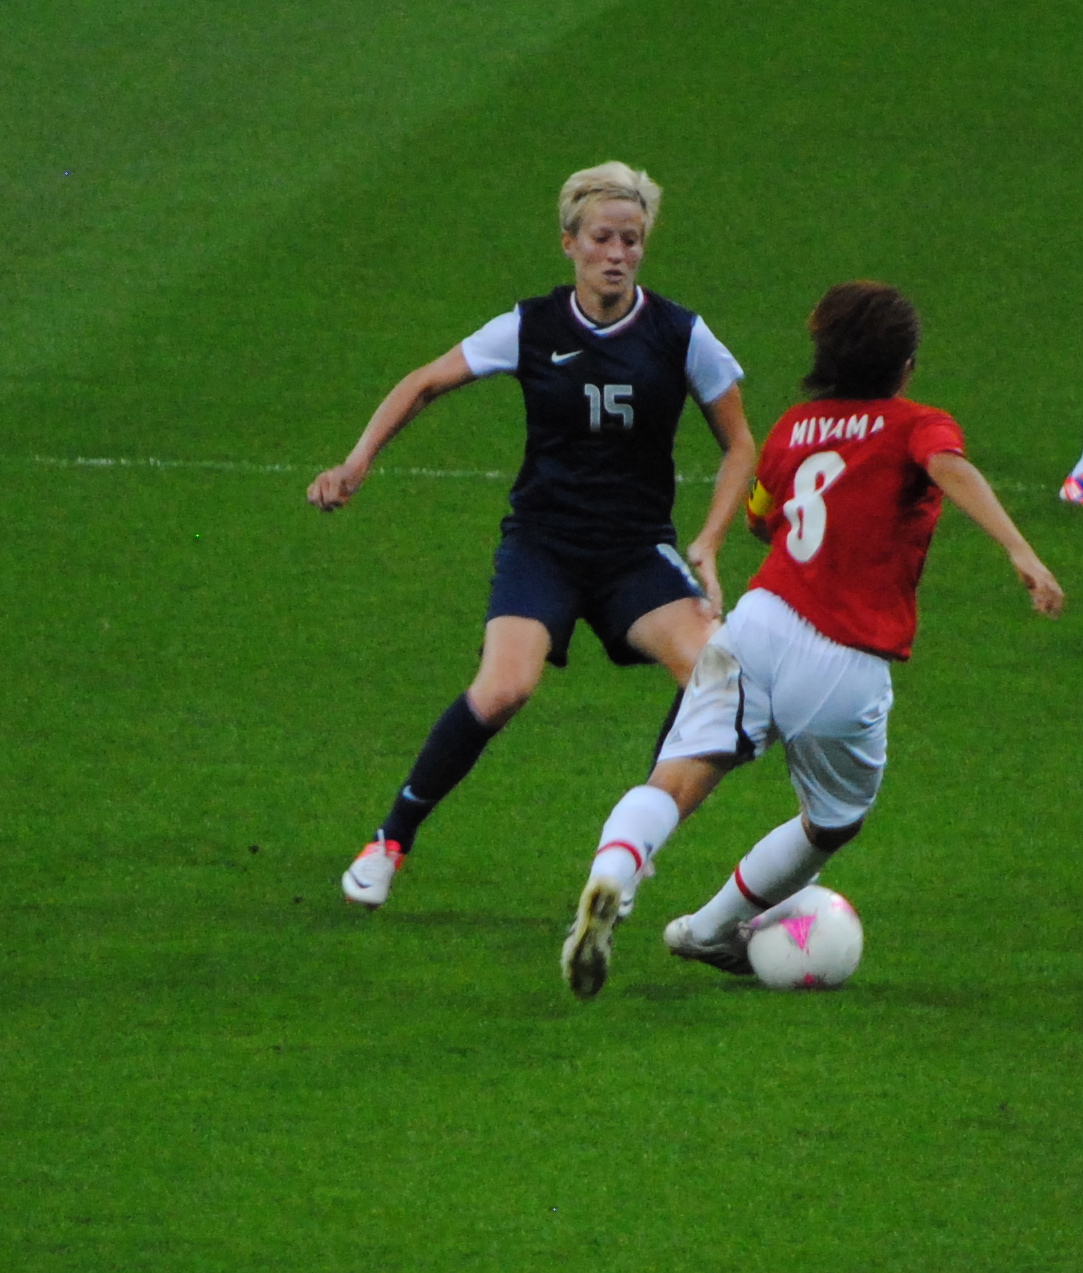 File:Women's Soccer - USA vs Japan (6).jpg - Wikimedia Commons